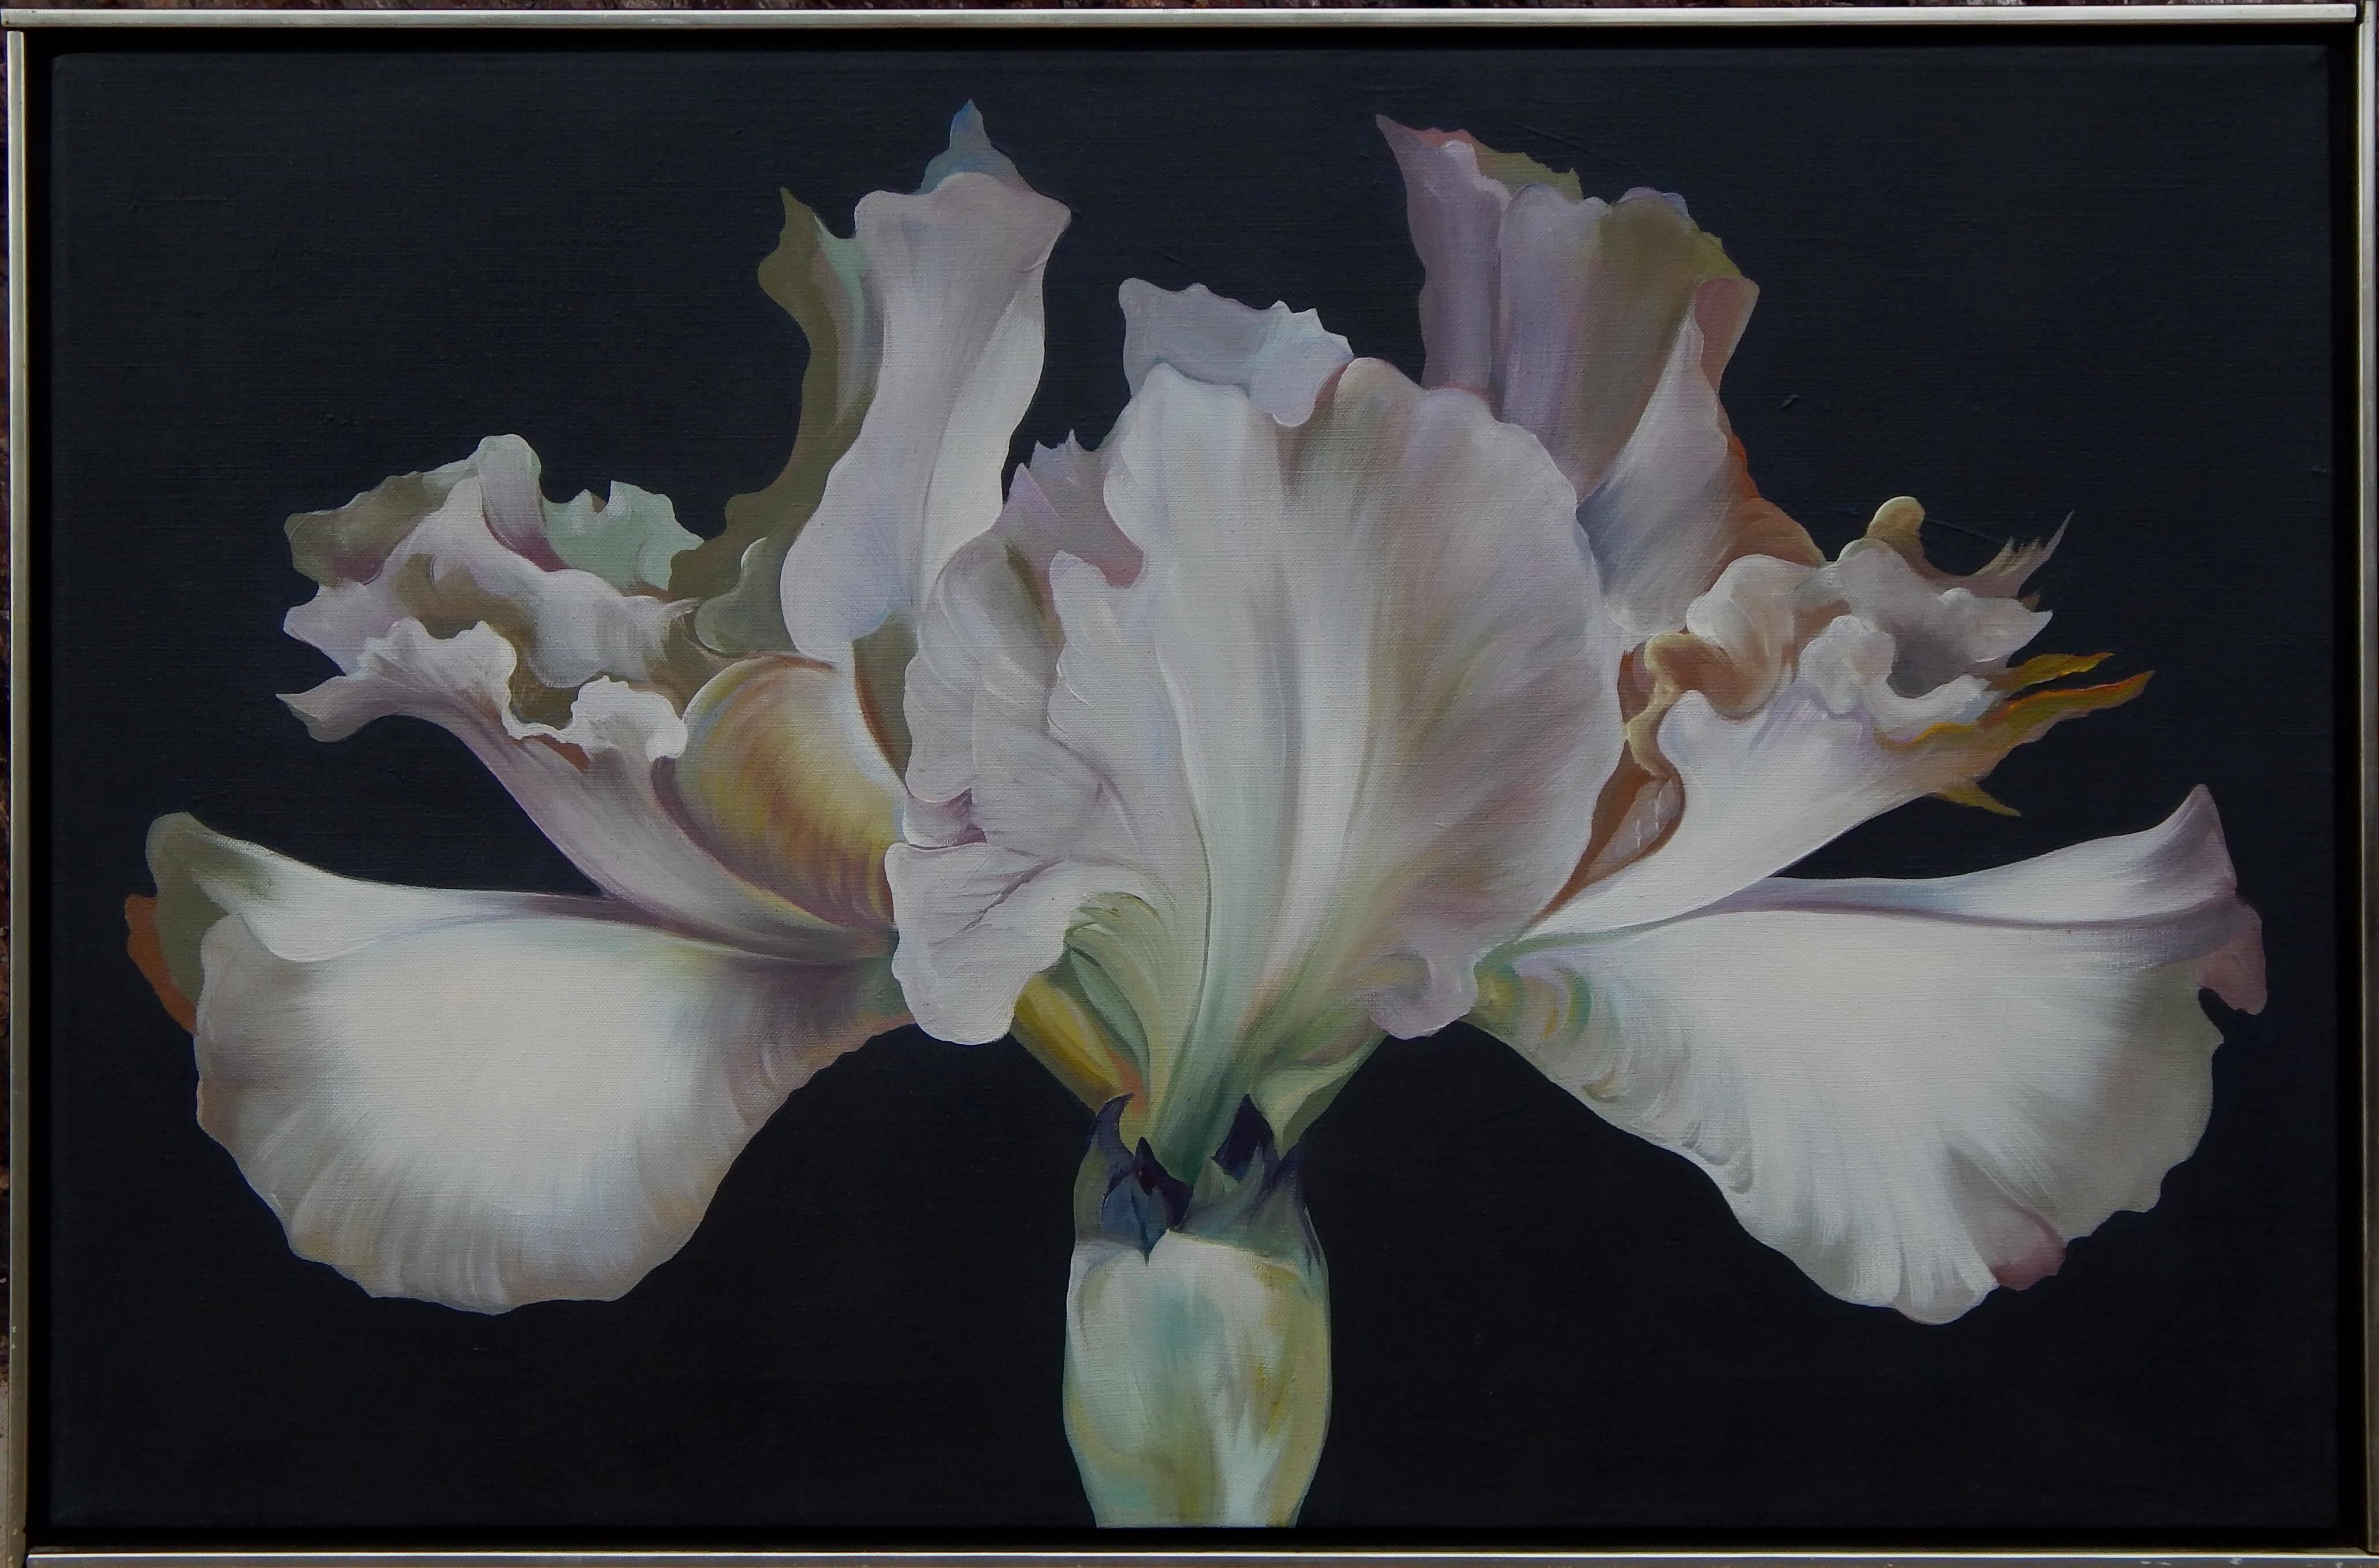 Dramatique floral d'iris par le célèbre artiste Lowell Nesbitt.
Taille de l'image : 22